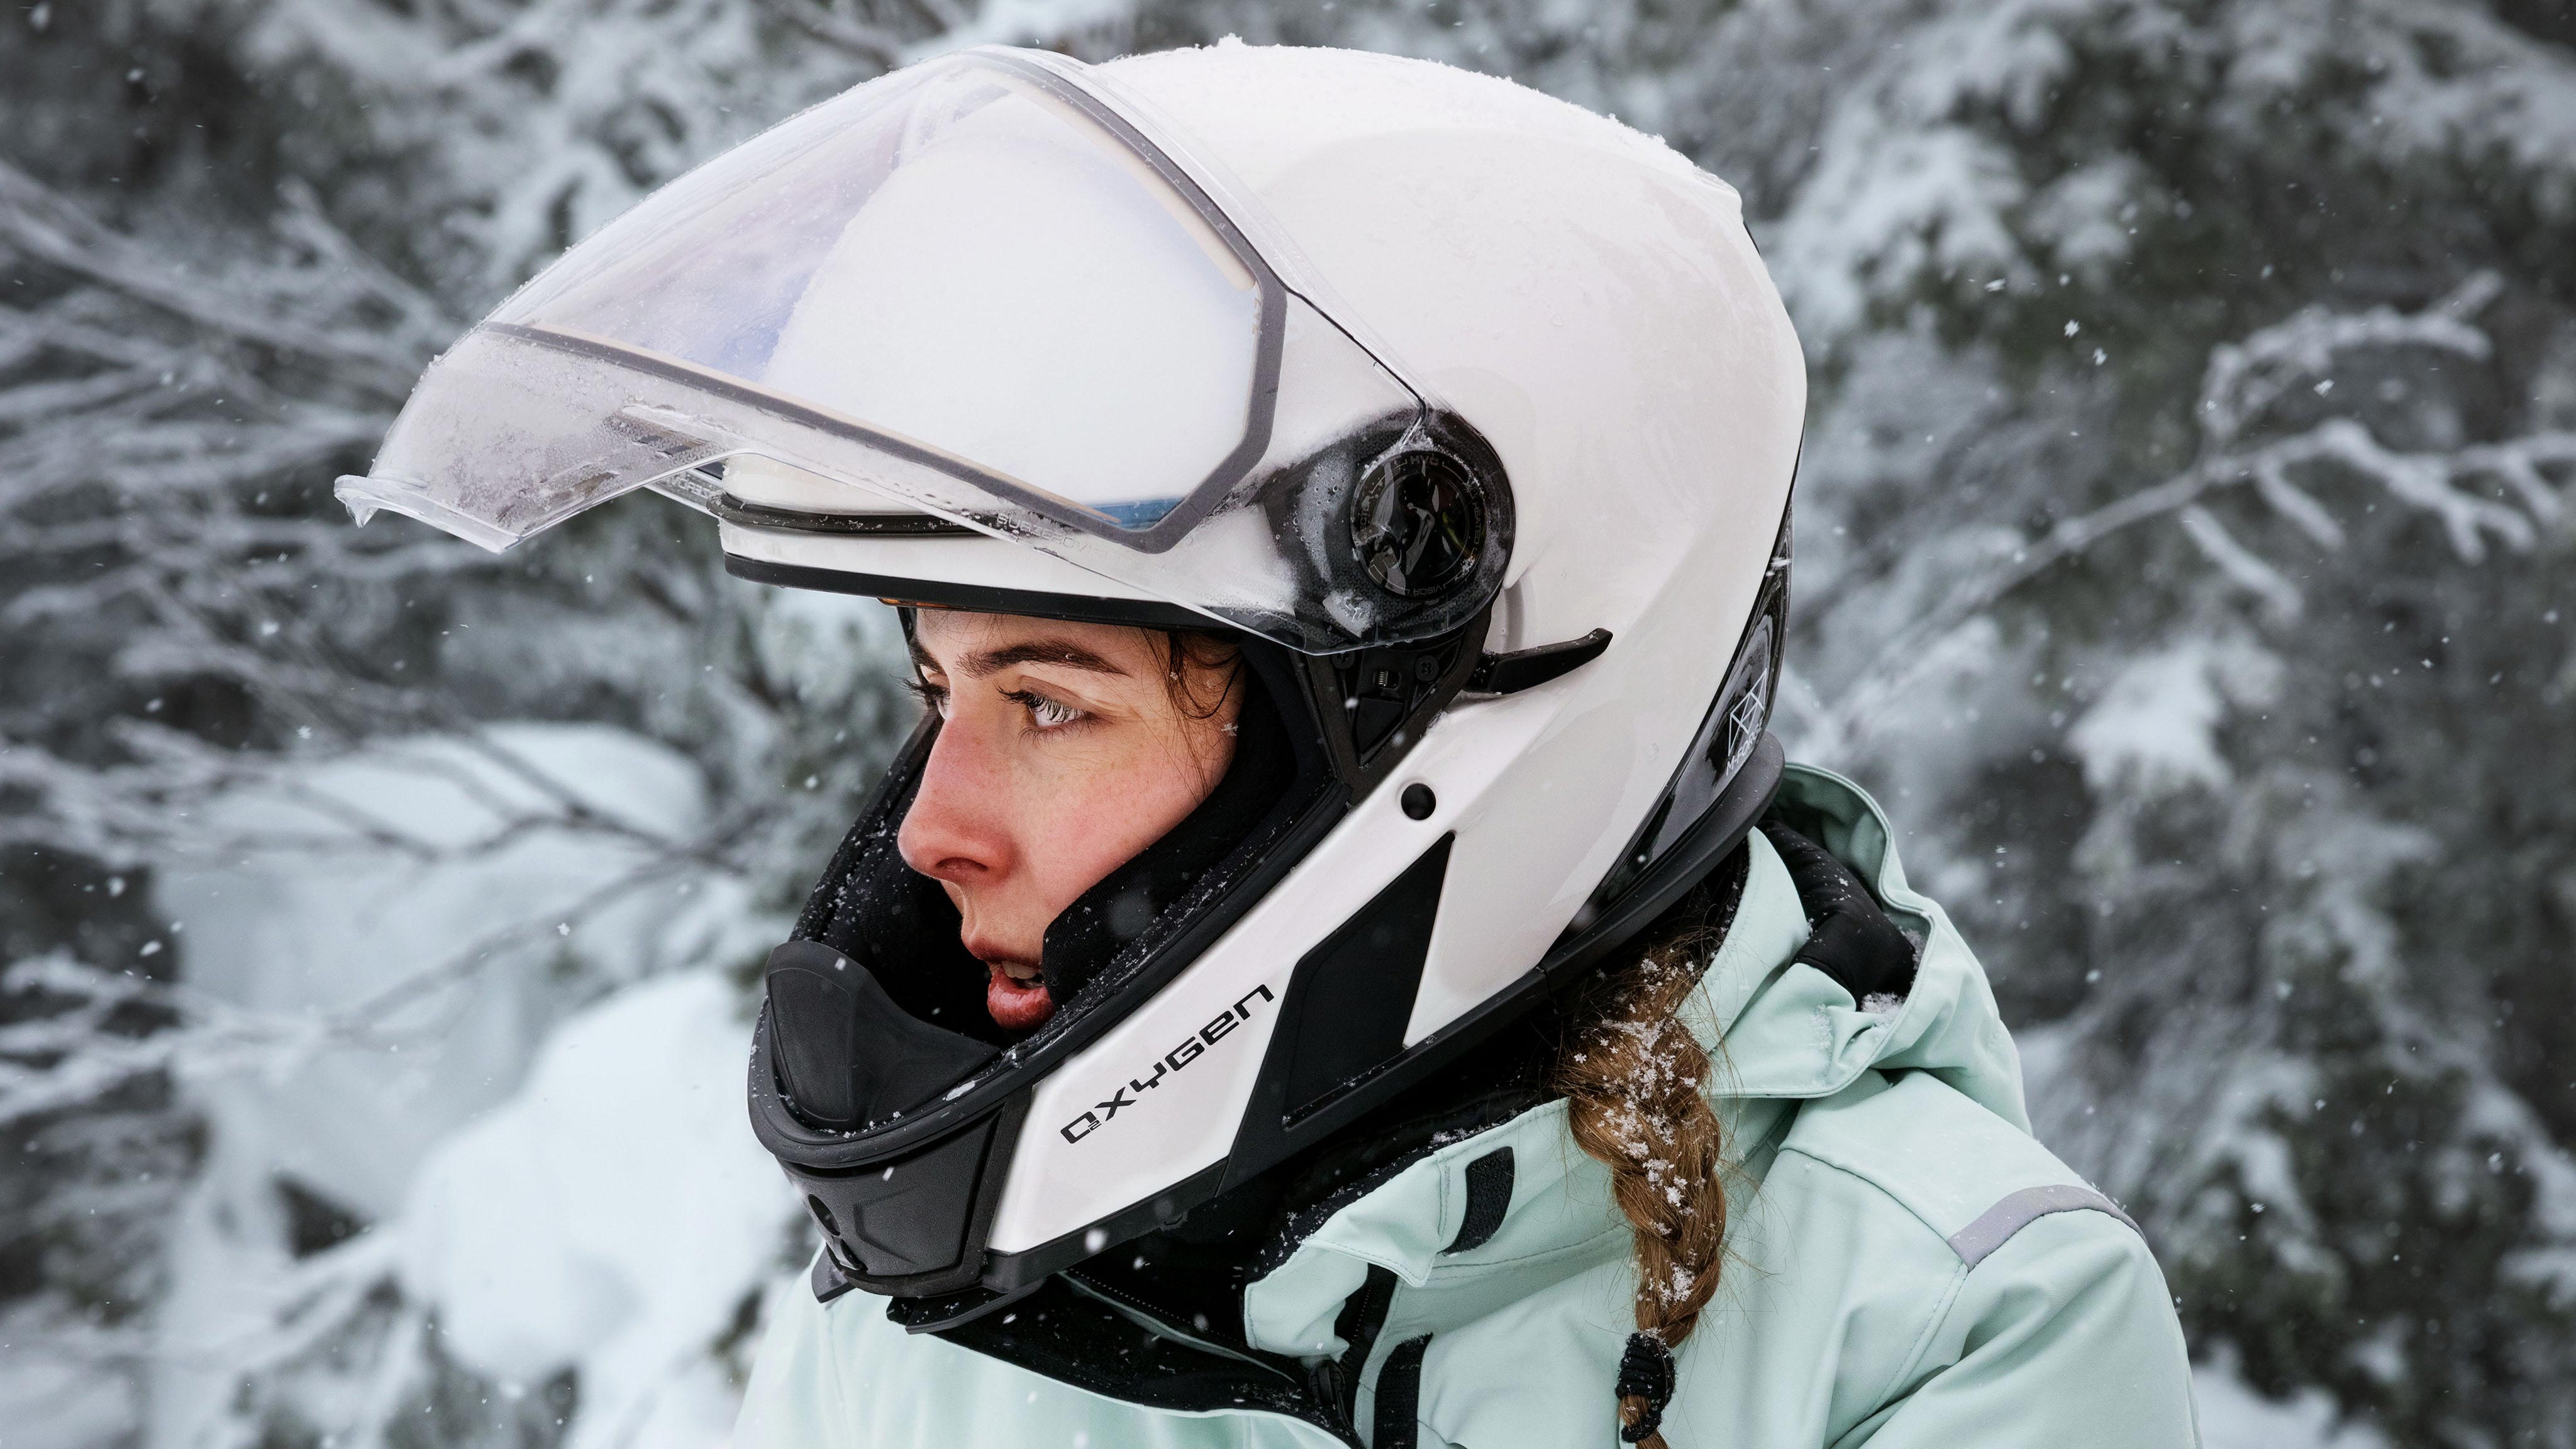 Oxygenヘルメットを装着している女性